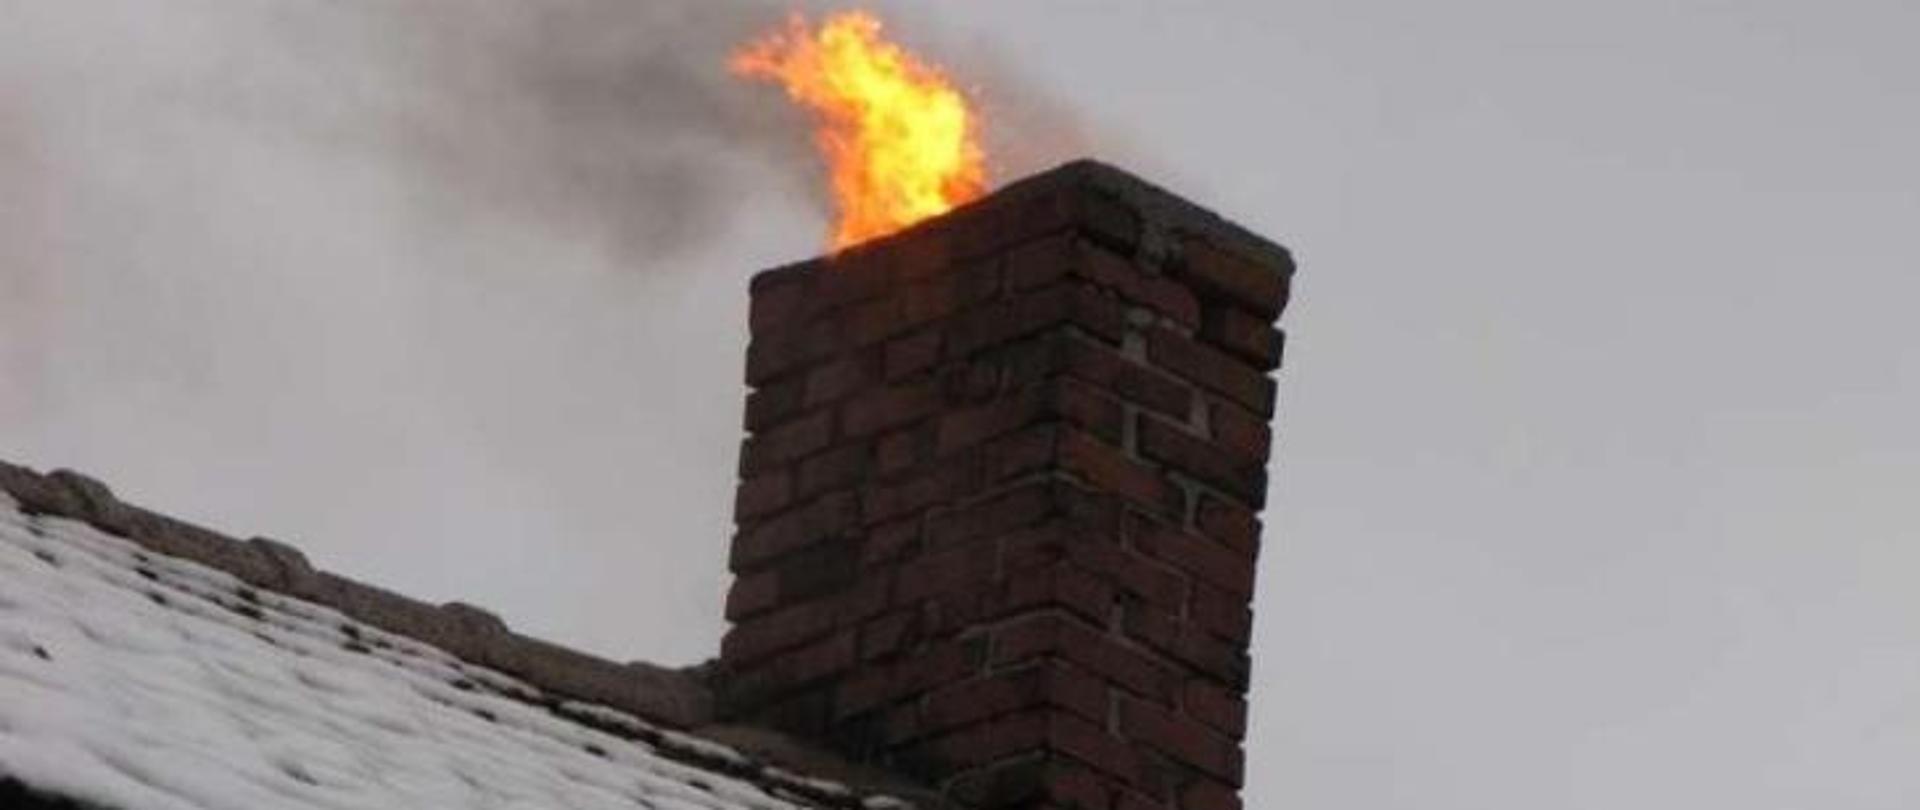 zdjęcie komina z którego wychodzą języki ognia